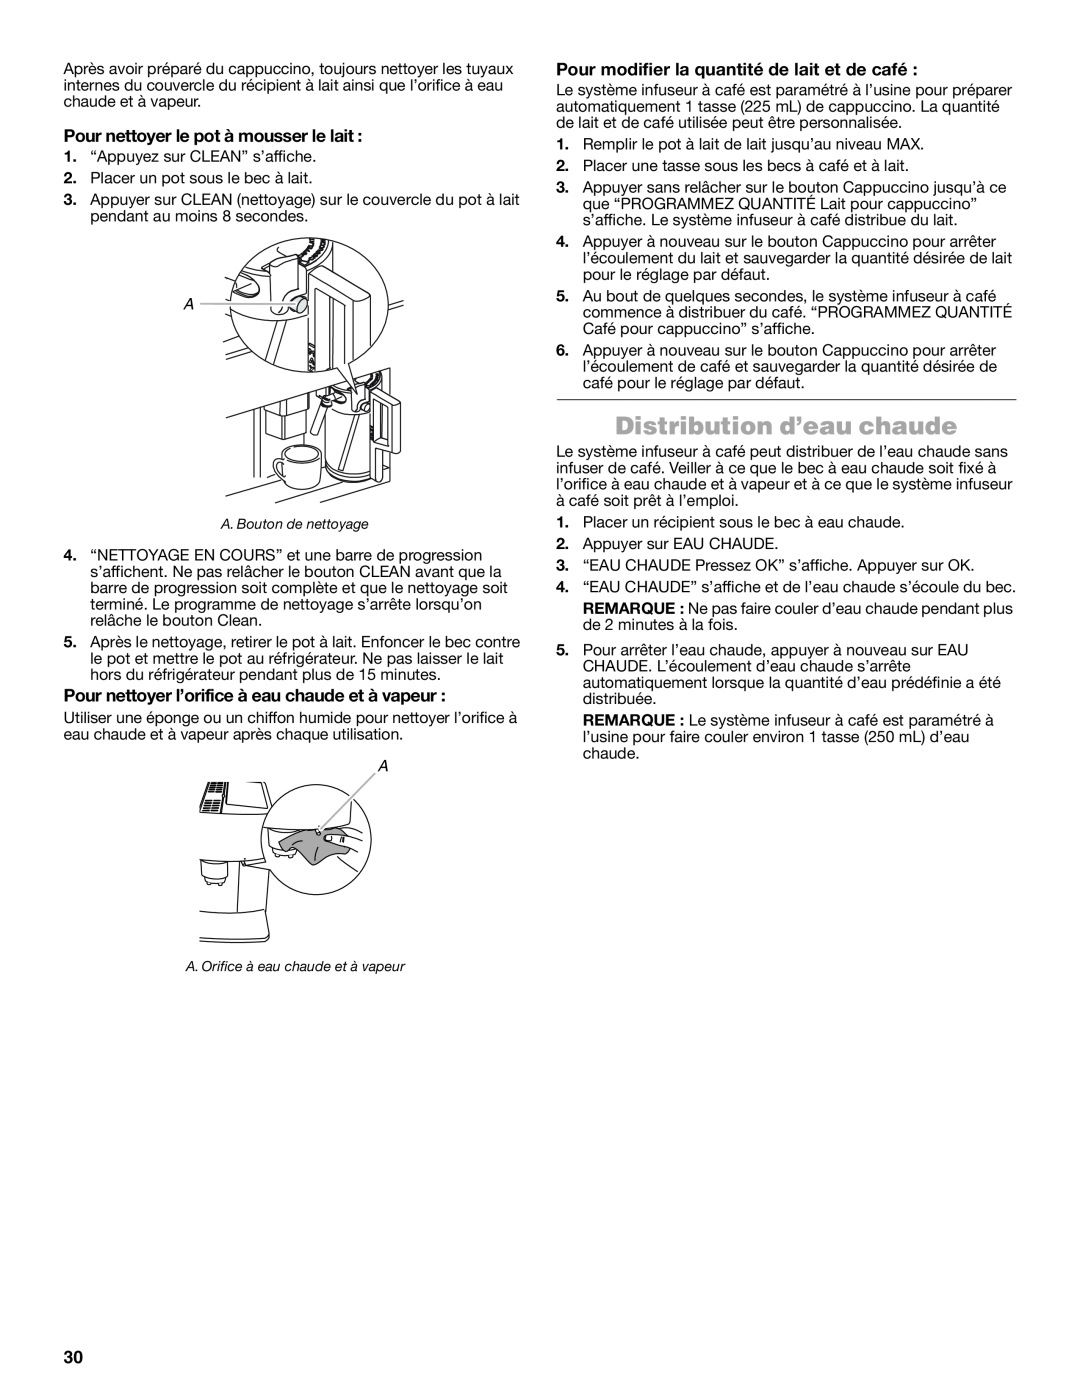 Jenn-Air JBC7624BS manual Distribution d’eau chaude, Pour nettoyer le pot à mousser le lait 